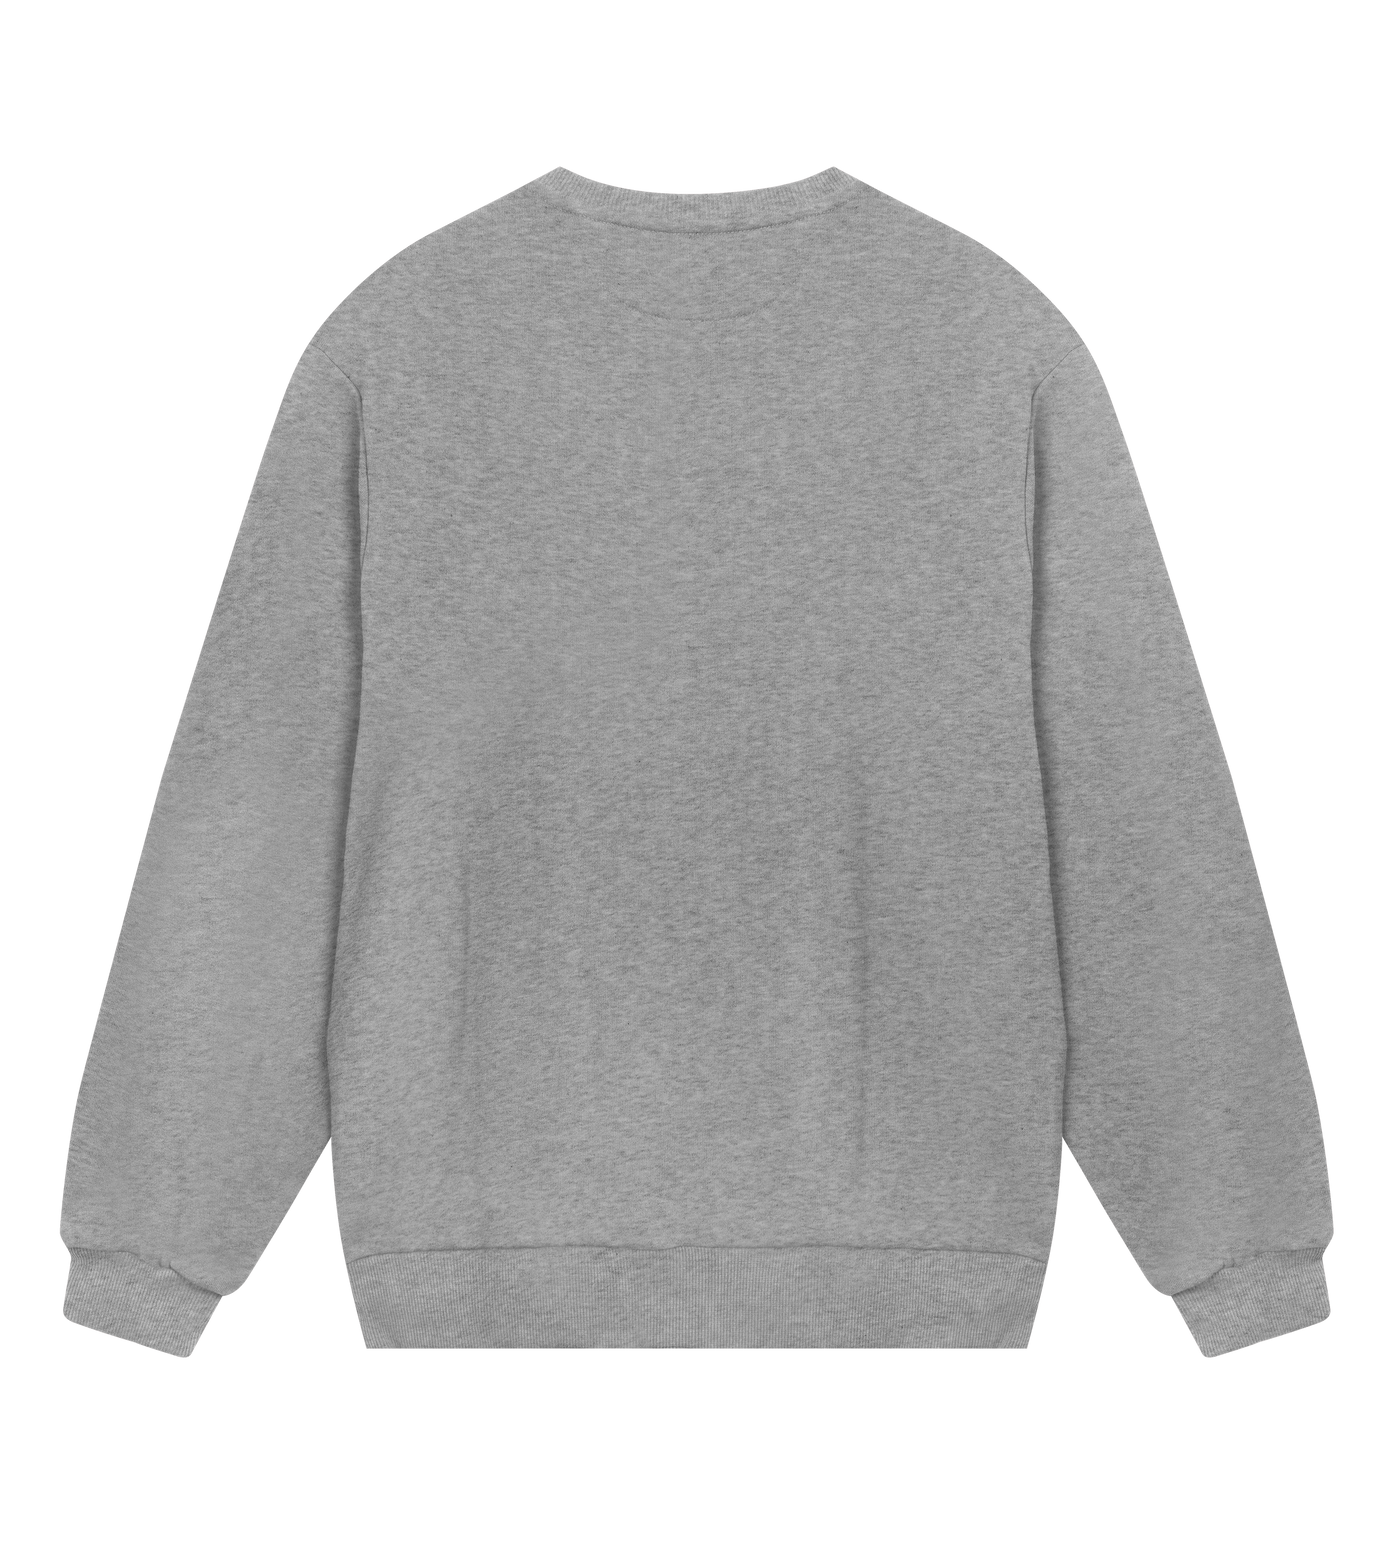 Nässjö Saints Sweatshirt - Premium sweatshirt from REYRR STUDIO - Shop now at Reyrr Athletics